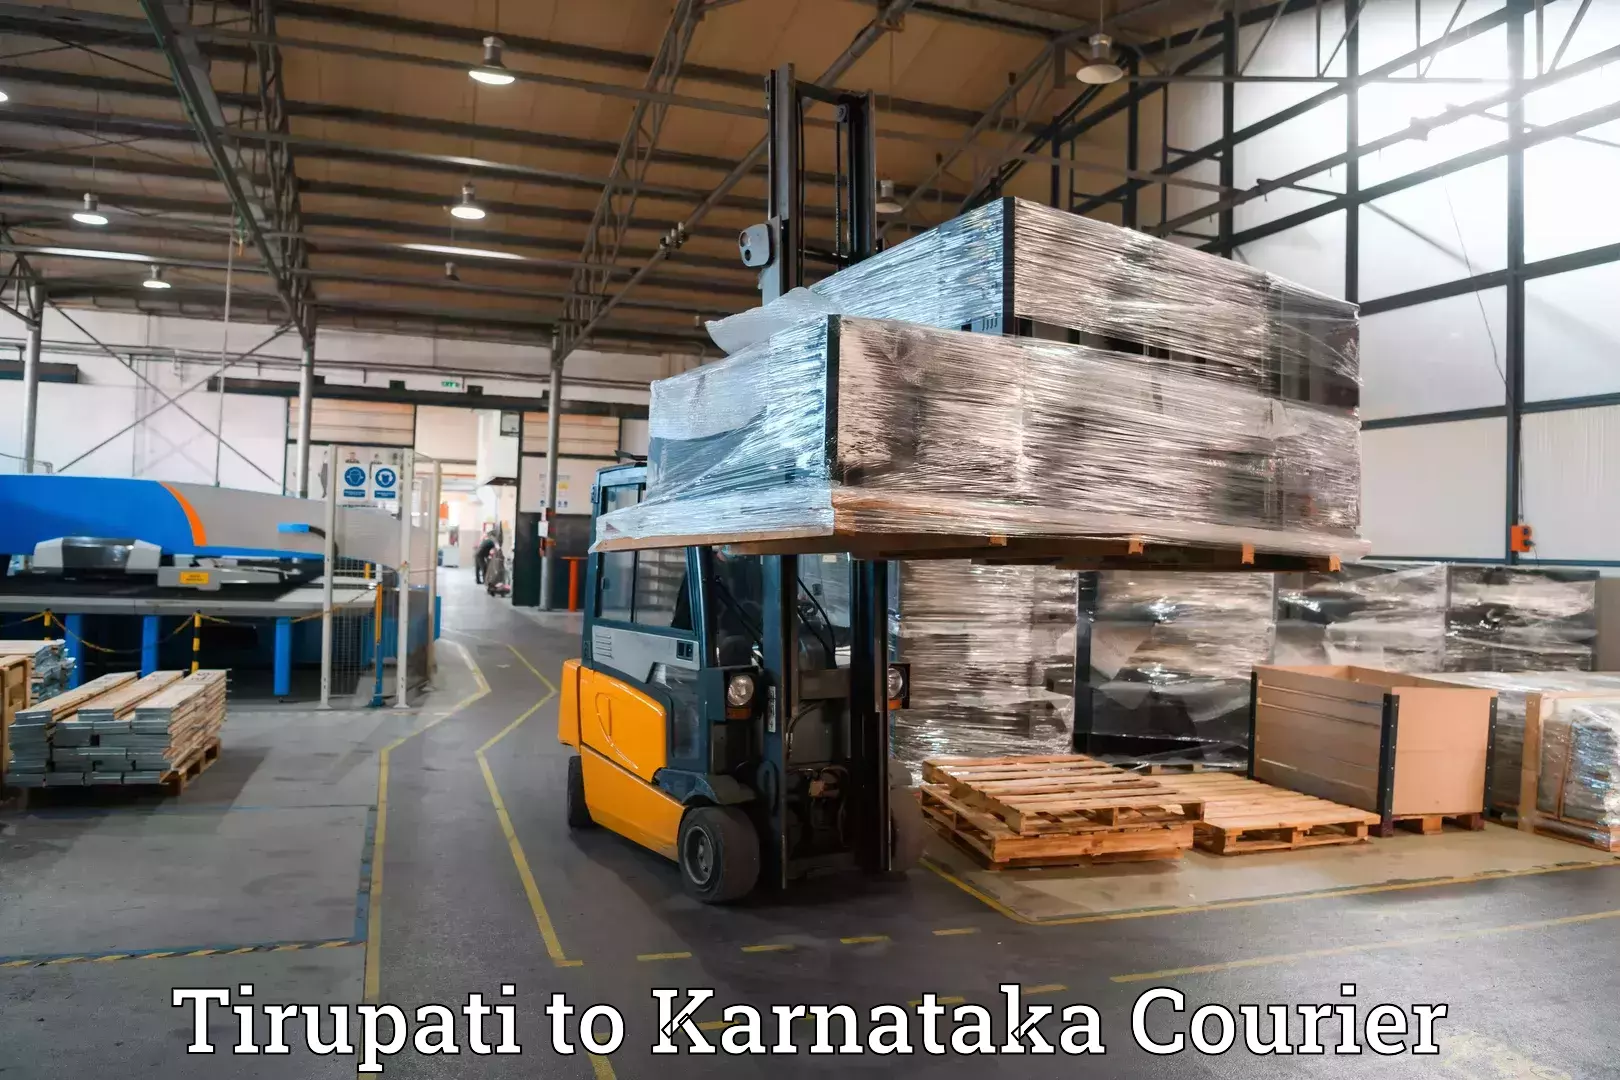 Automated luggage transport Tirupati to Hagaribommanahalli